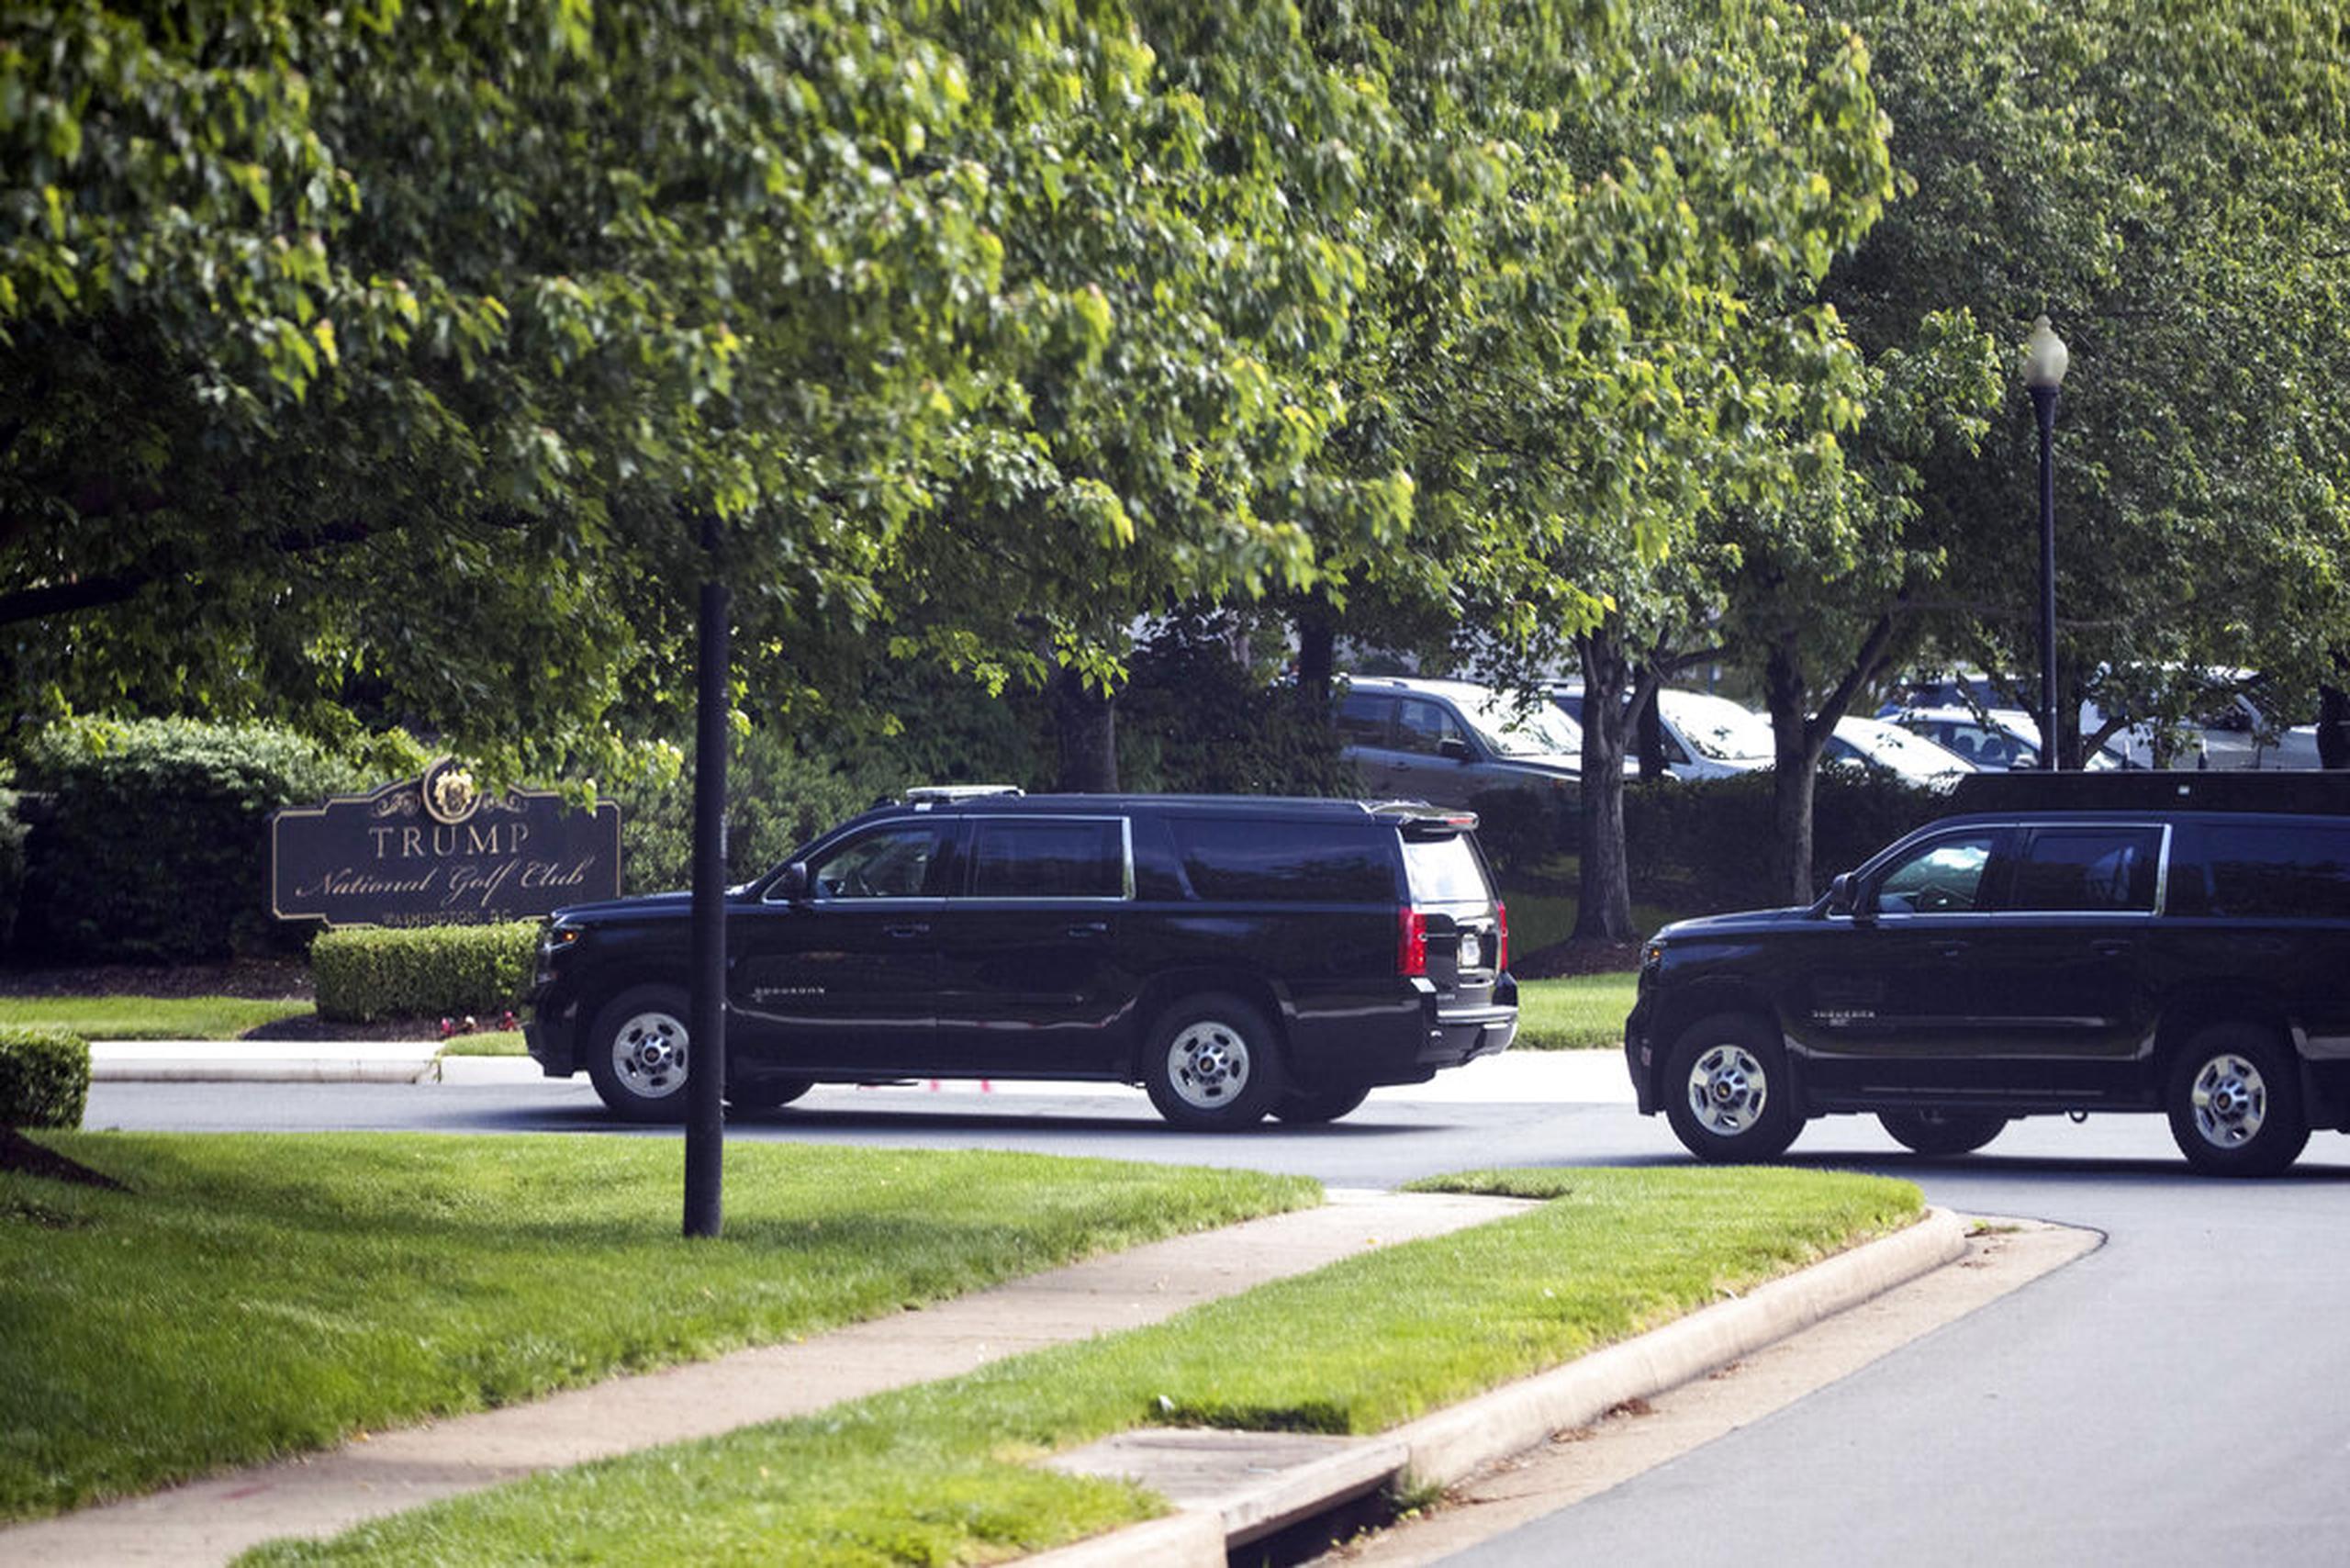 La caravana del presidente Donald Trump llegó hoy a su club privado Trump National Golf Club en Sterling, Virginia.